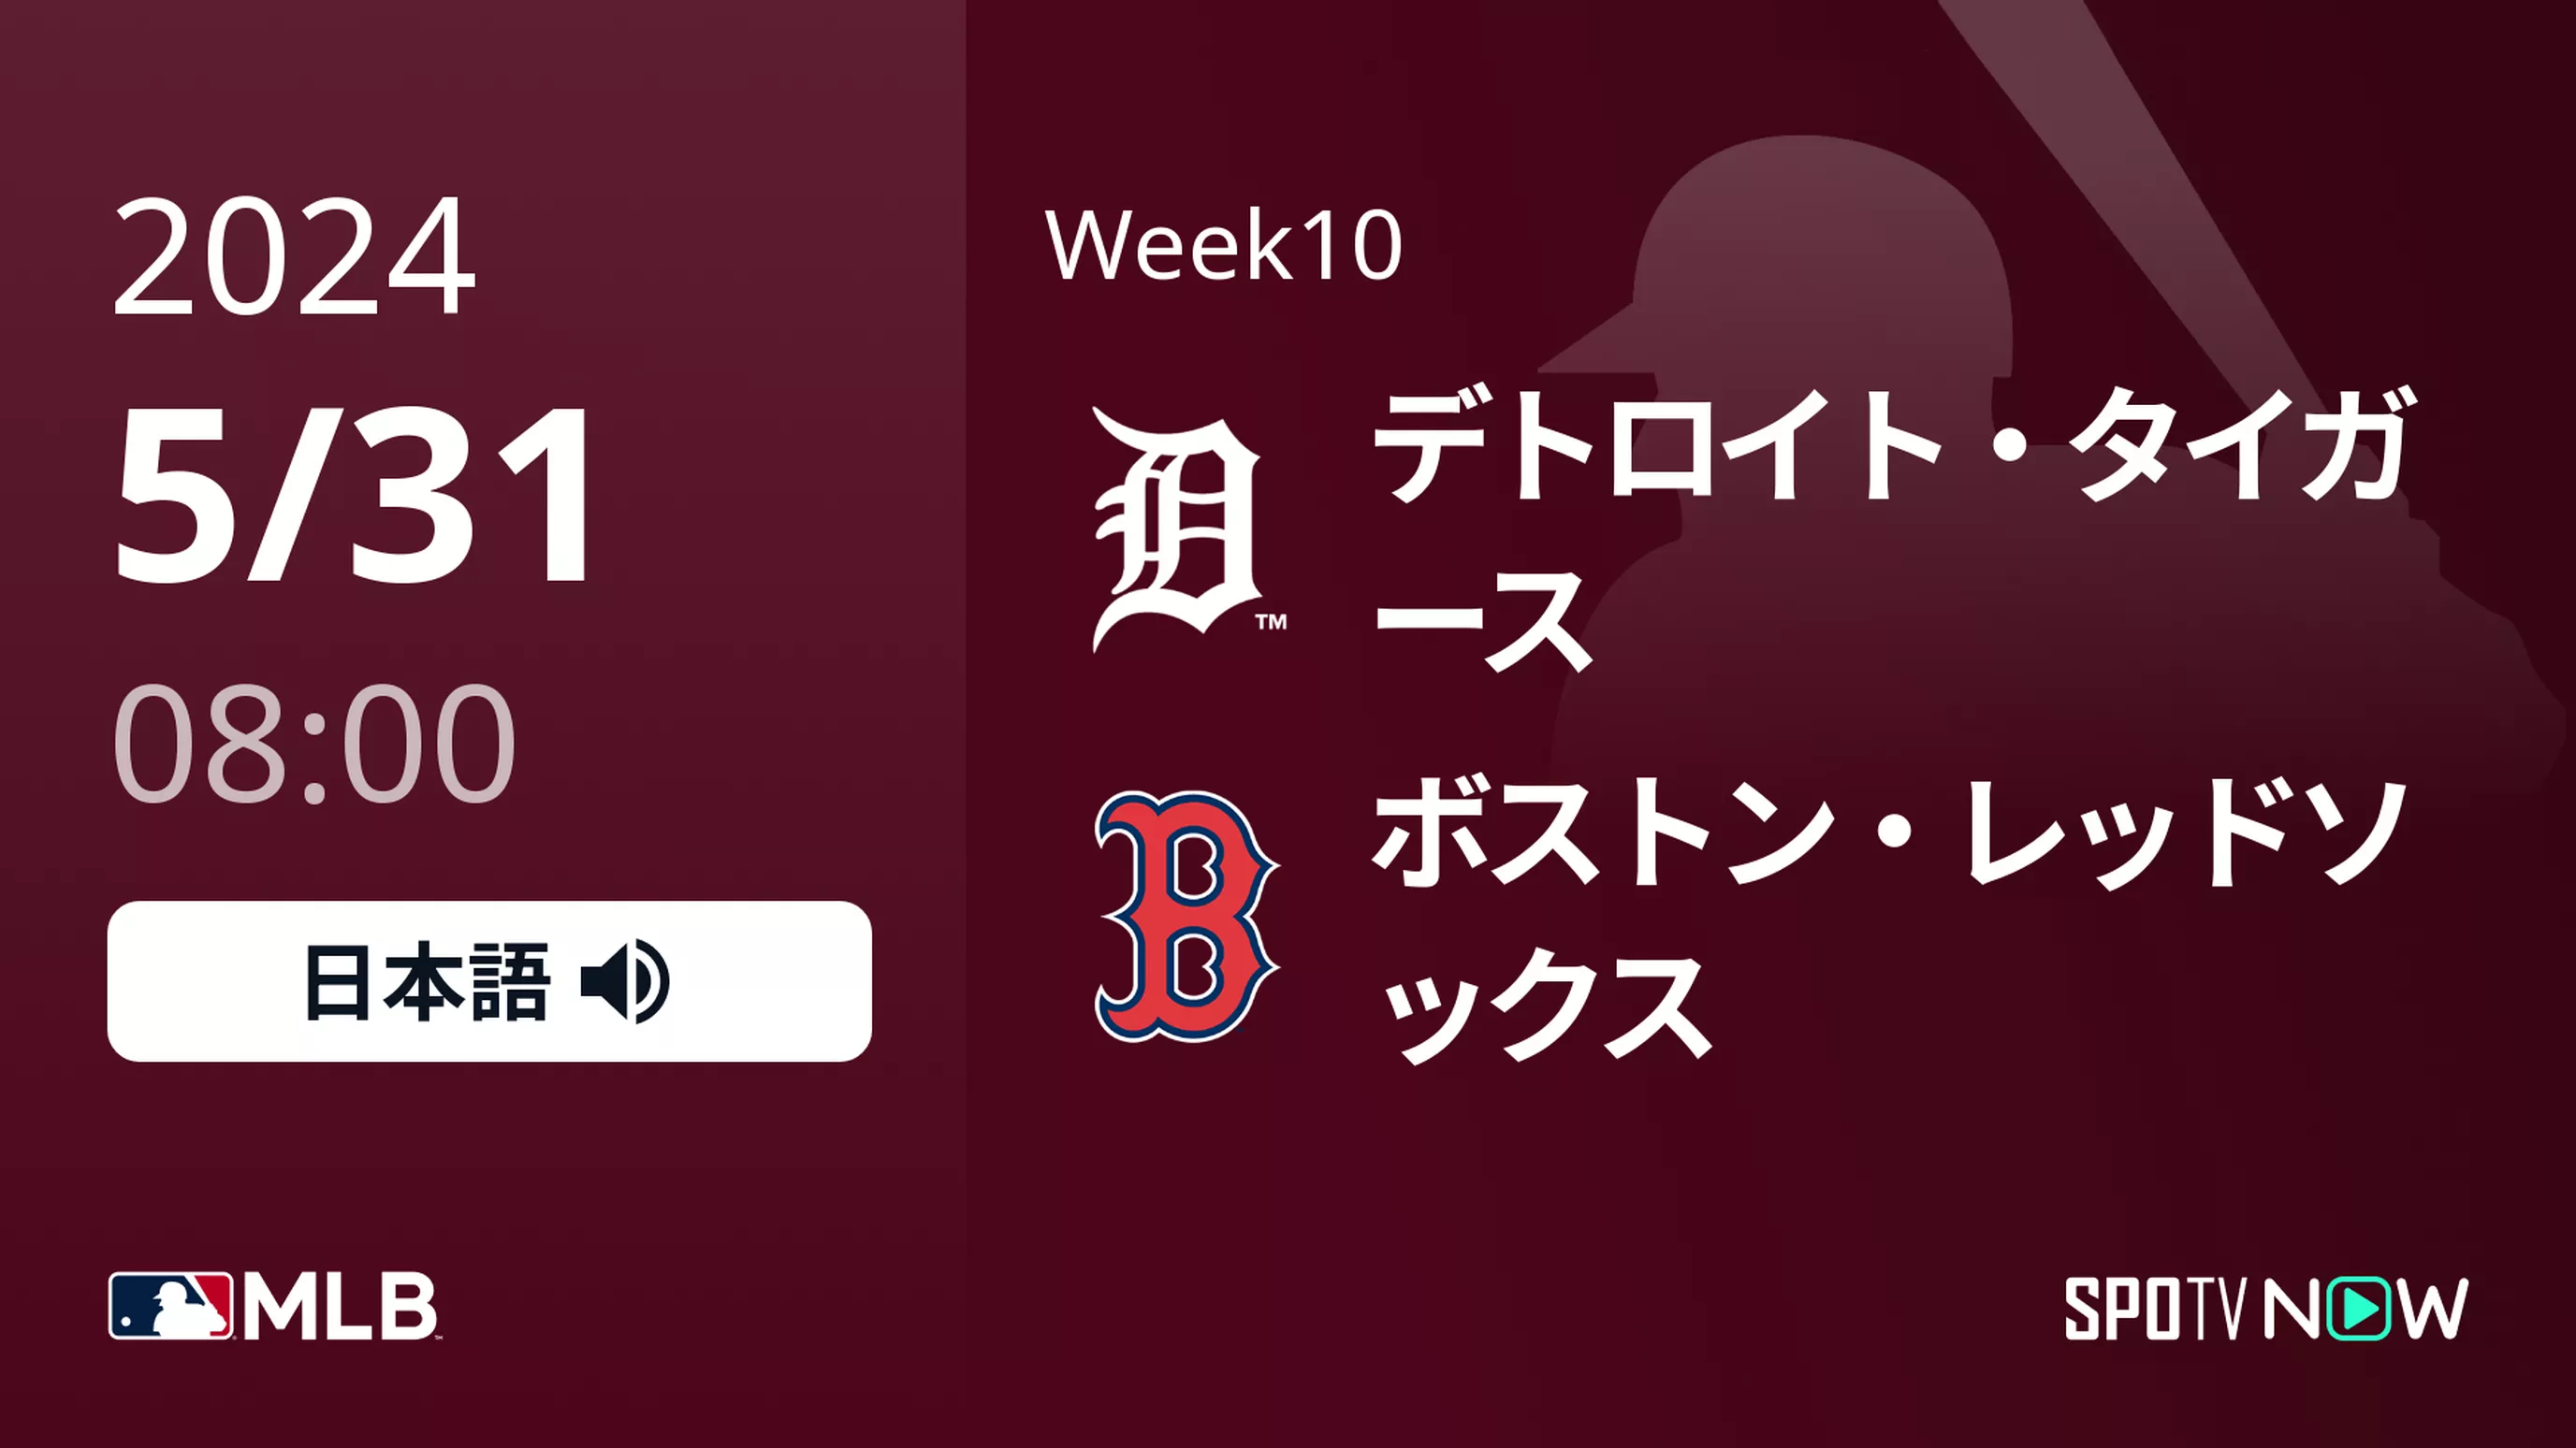 Week10 タイガース vs Rソックス 5/31[MLB]